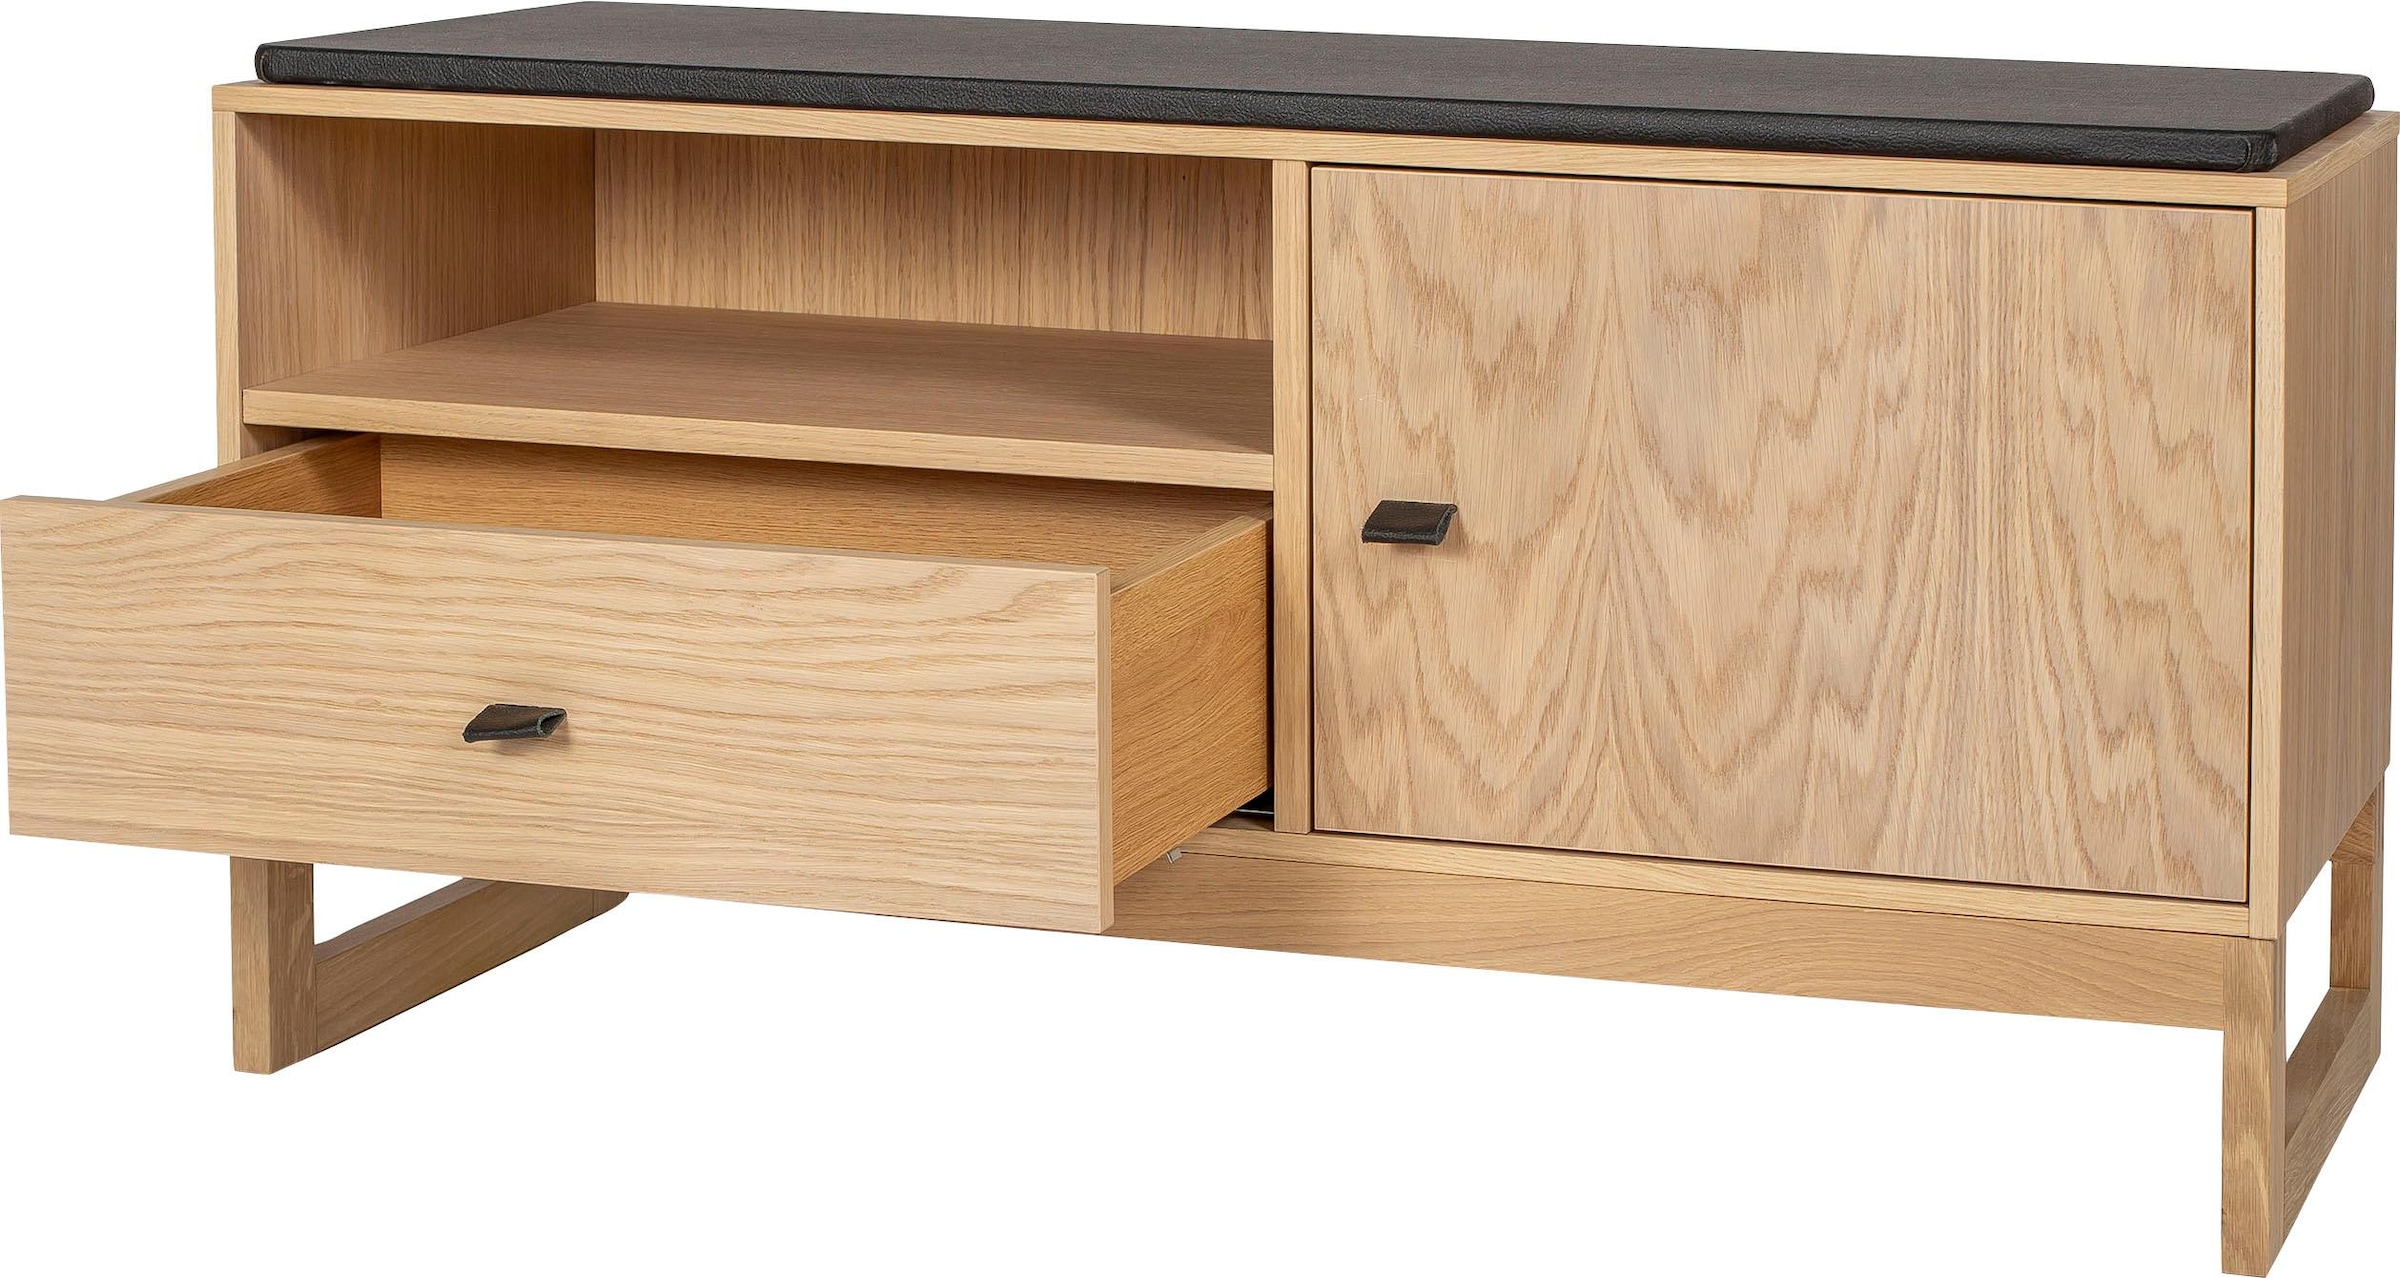 Woodman Schuhbank »Slussen«, im Holzfurnier Design, Eiche aus kaufen skandinavian